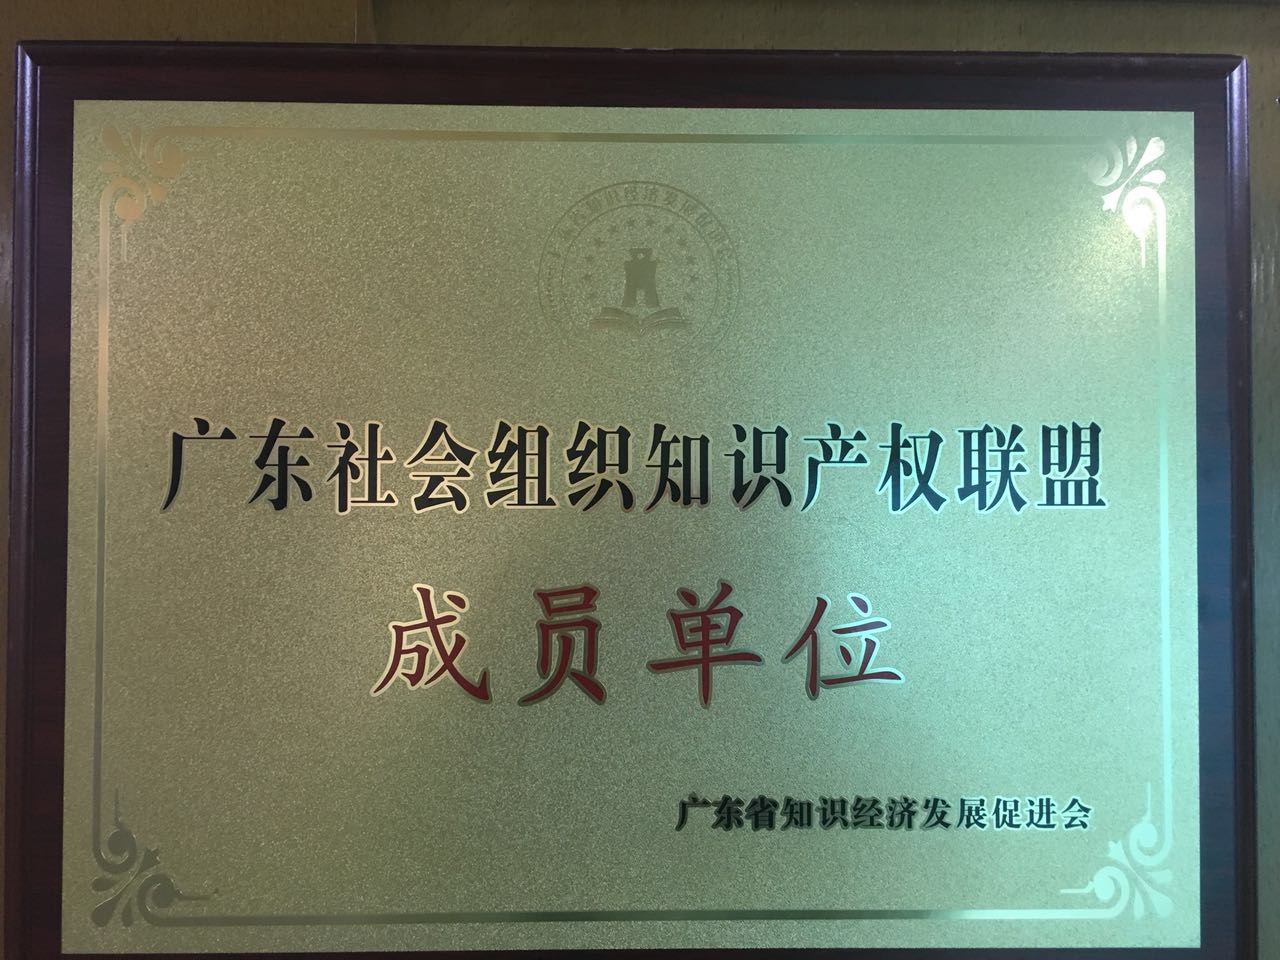 广东社会组织知识产权联盟会员单位